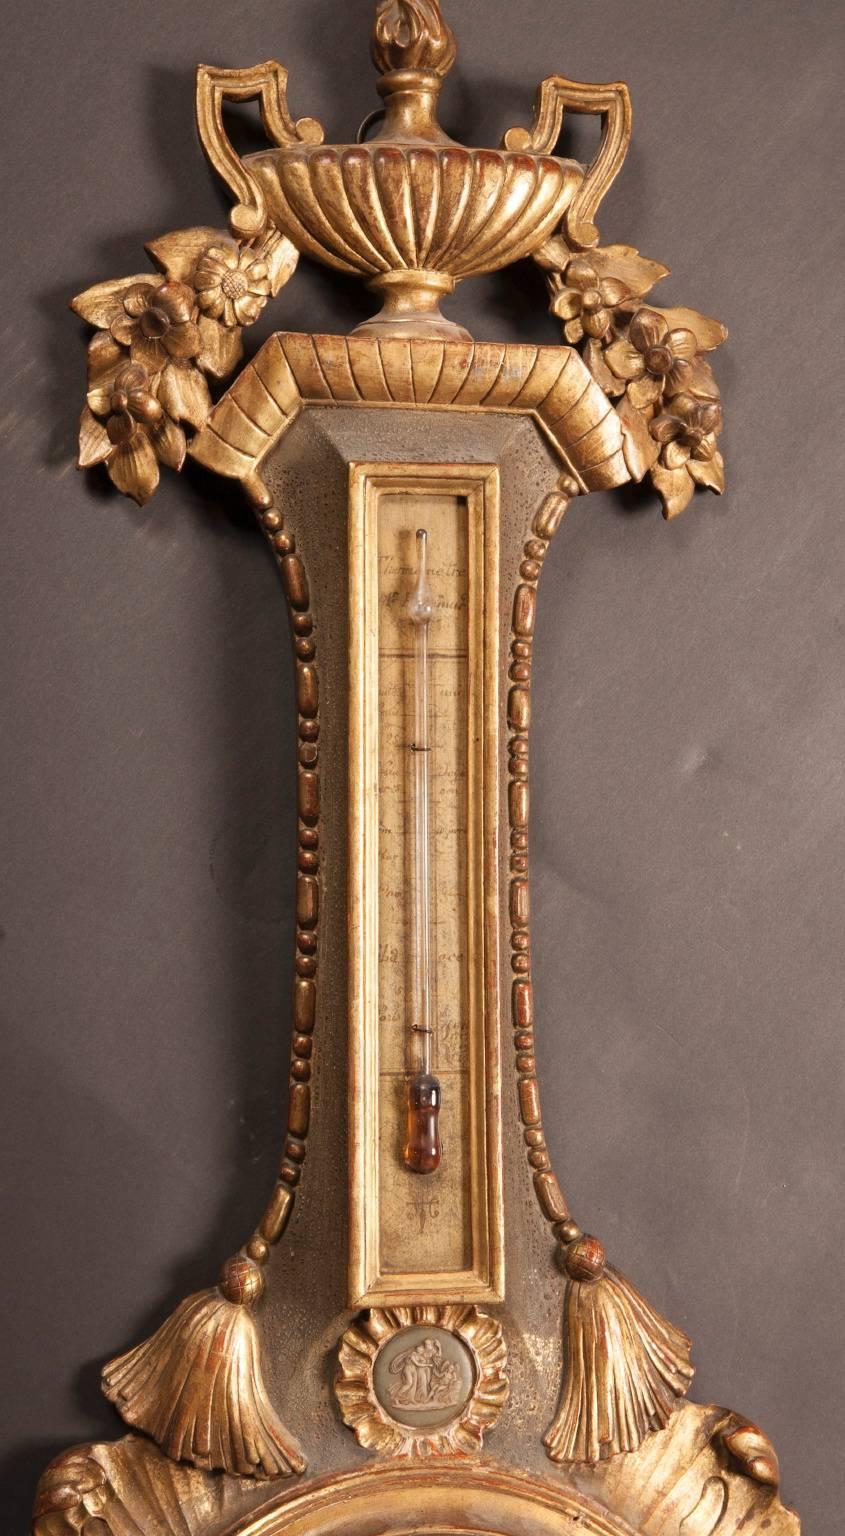 Dieses im Frankreich des 18. Jahrhunderts aus handgeschnitztem Holz gefertigte Barometer ist elegant mit einer Vielzahl von geschnitzten und mit Blattgold überzogenen Motiven bedeckt. Auf dem Stiel des Barometers sitzt eine griechische Vase mit